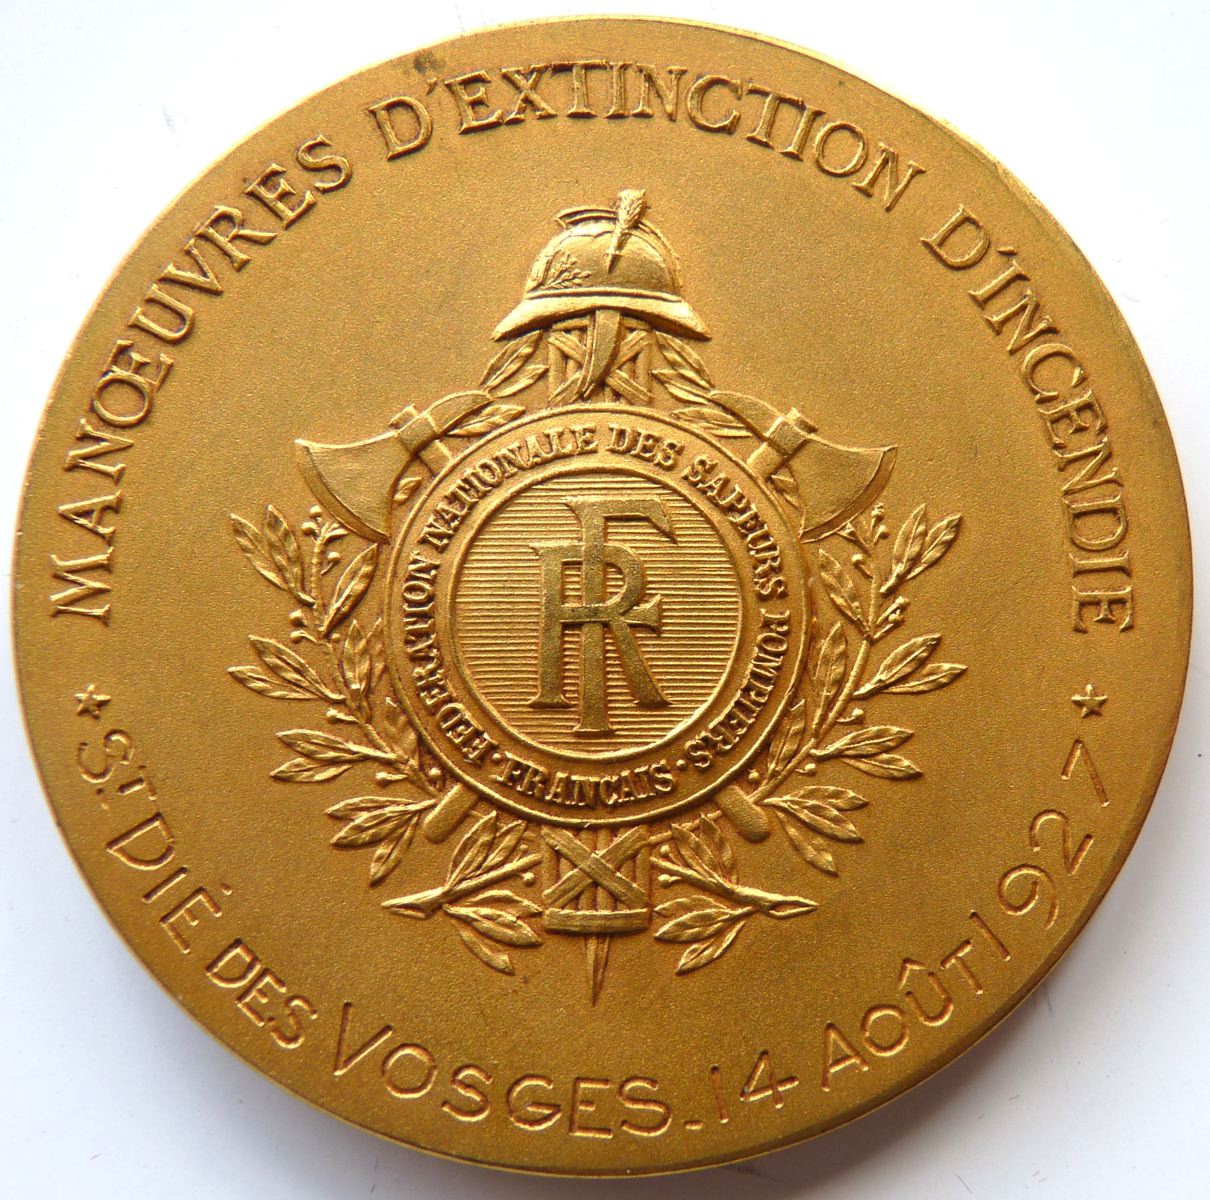 Manoeuvres d'extinction d'incendie - Saint Dié des Vosges - 14 août 1927